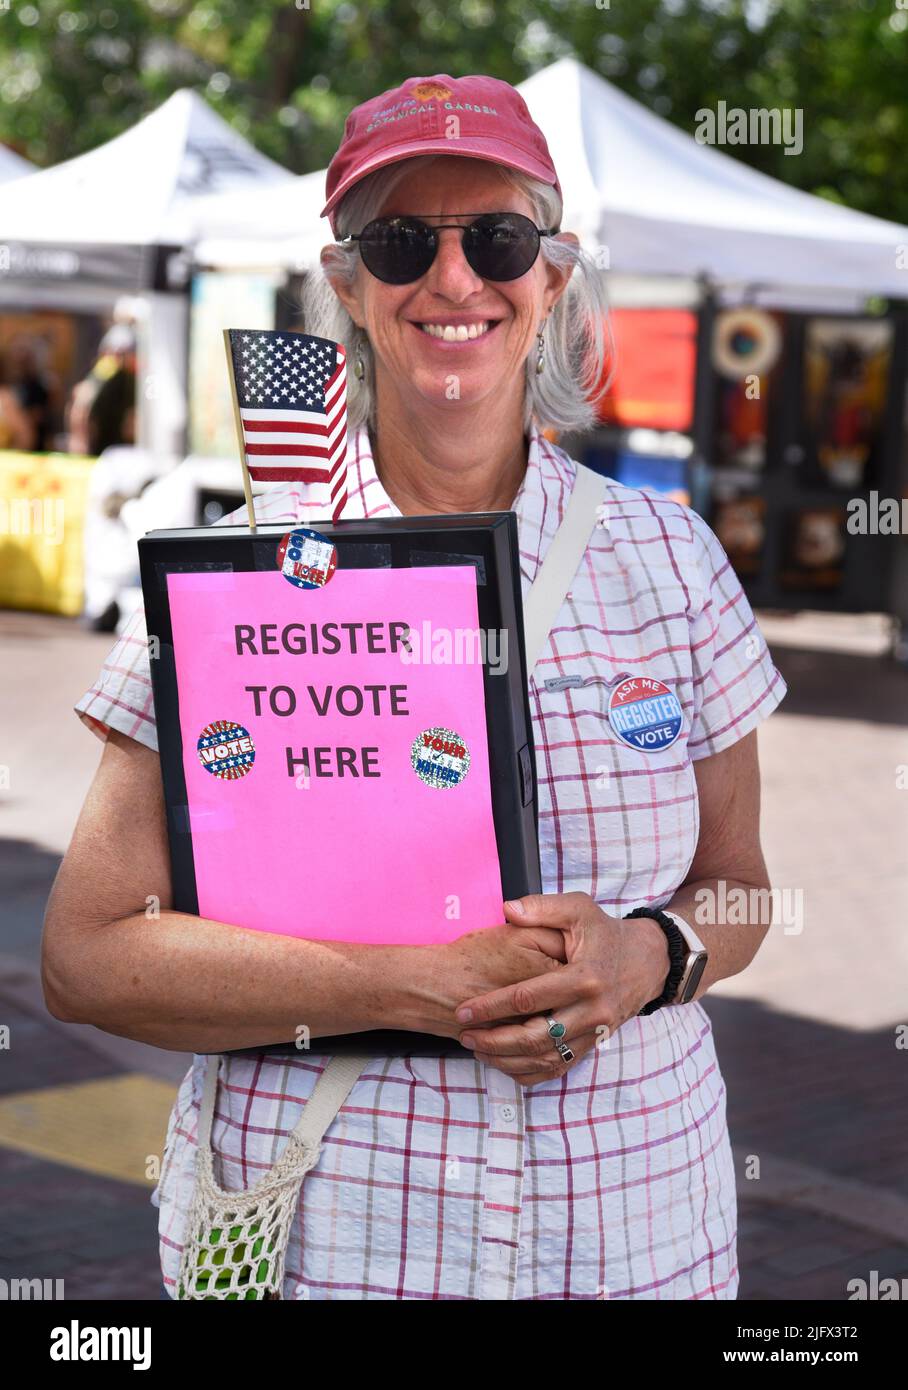 Ein Freiwilliger bei einer Feiertagsveranstaltung am 4. Juli in Santa Fe, New Mexico, registriert Bürger, die bei den bevorstehenden US-Wahlen wählen sollen. Stockfoto